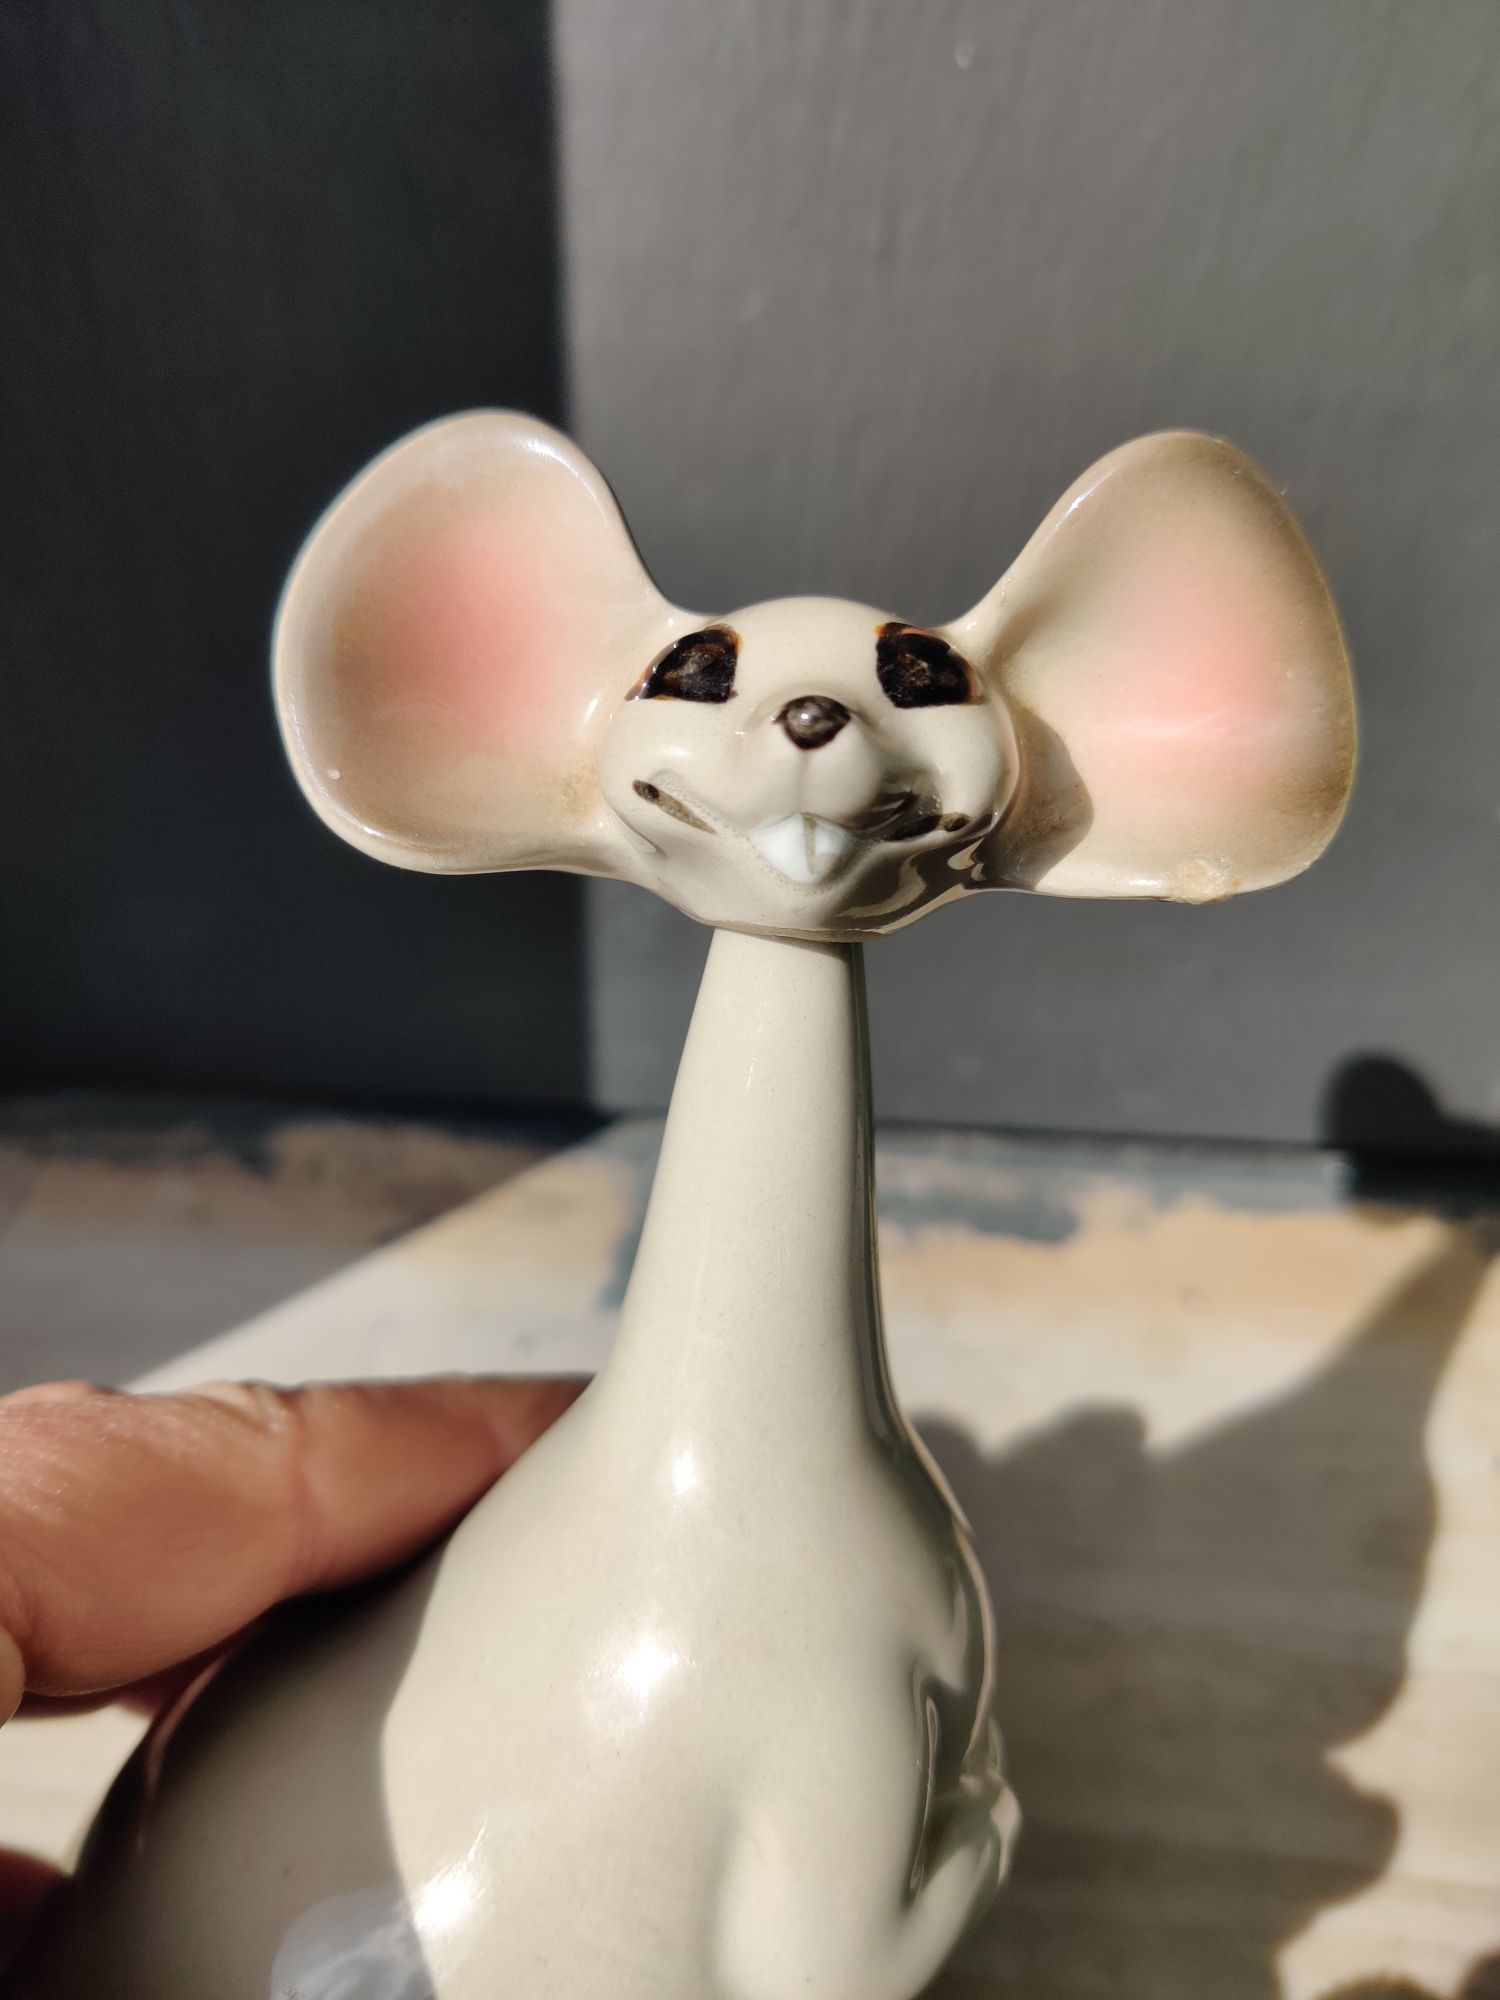 Винтажная фарфоровая мышь Norcrest. Япония